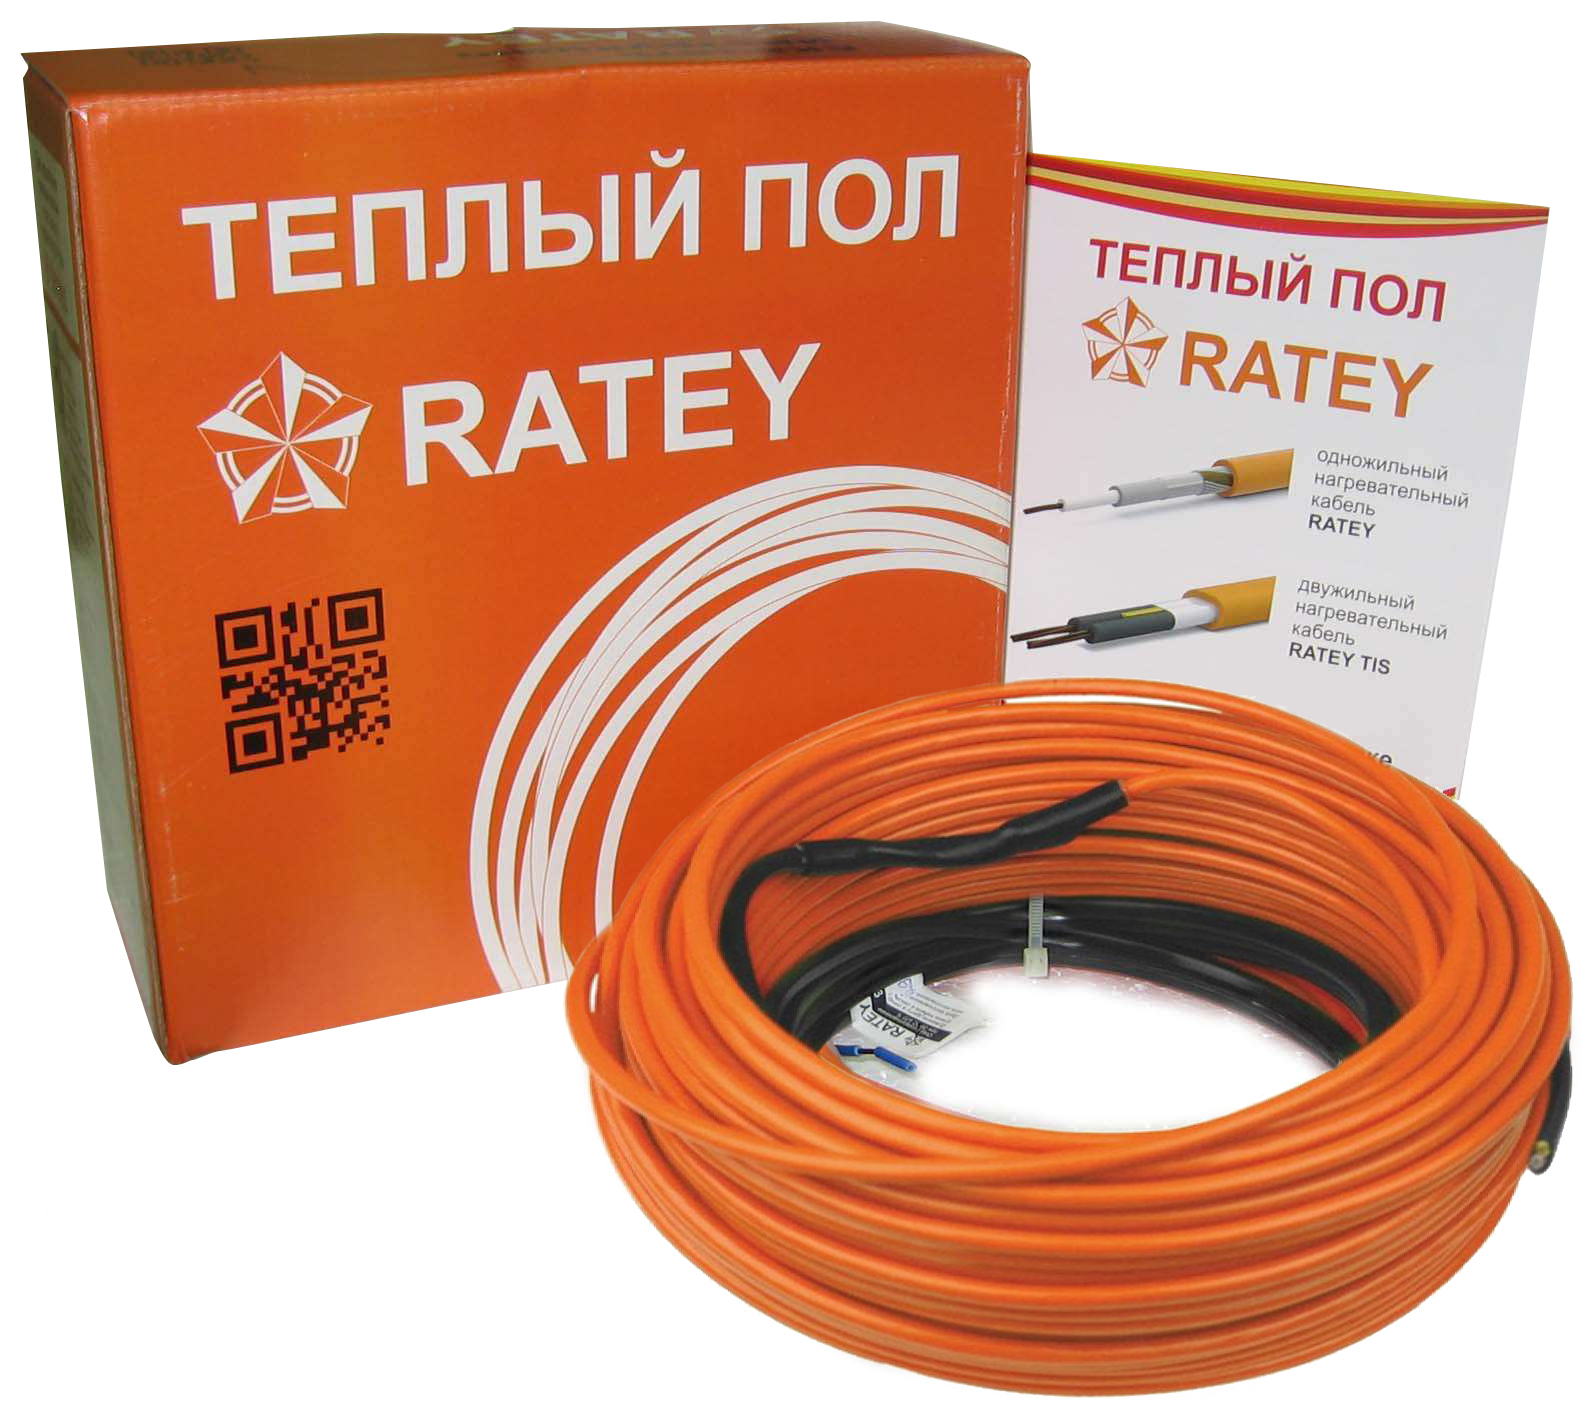 Тепла підлога Ratey під ламінат Ratey RD1 1.500